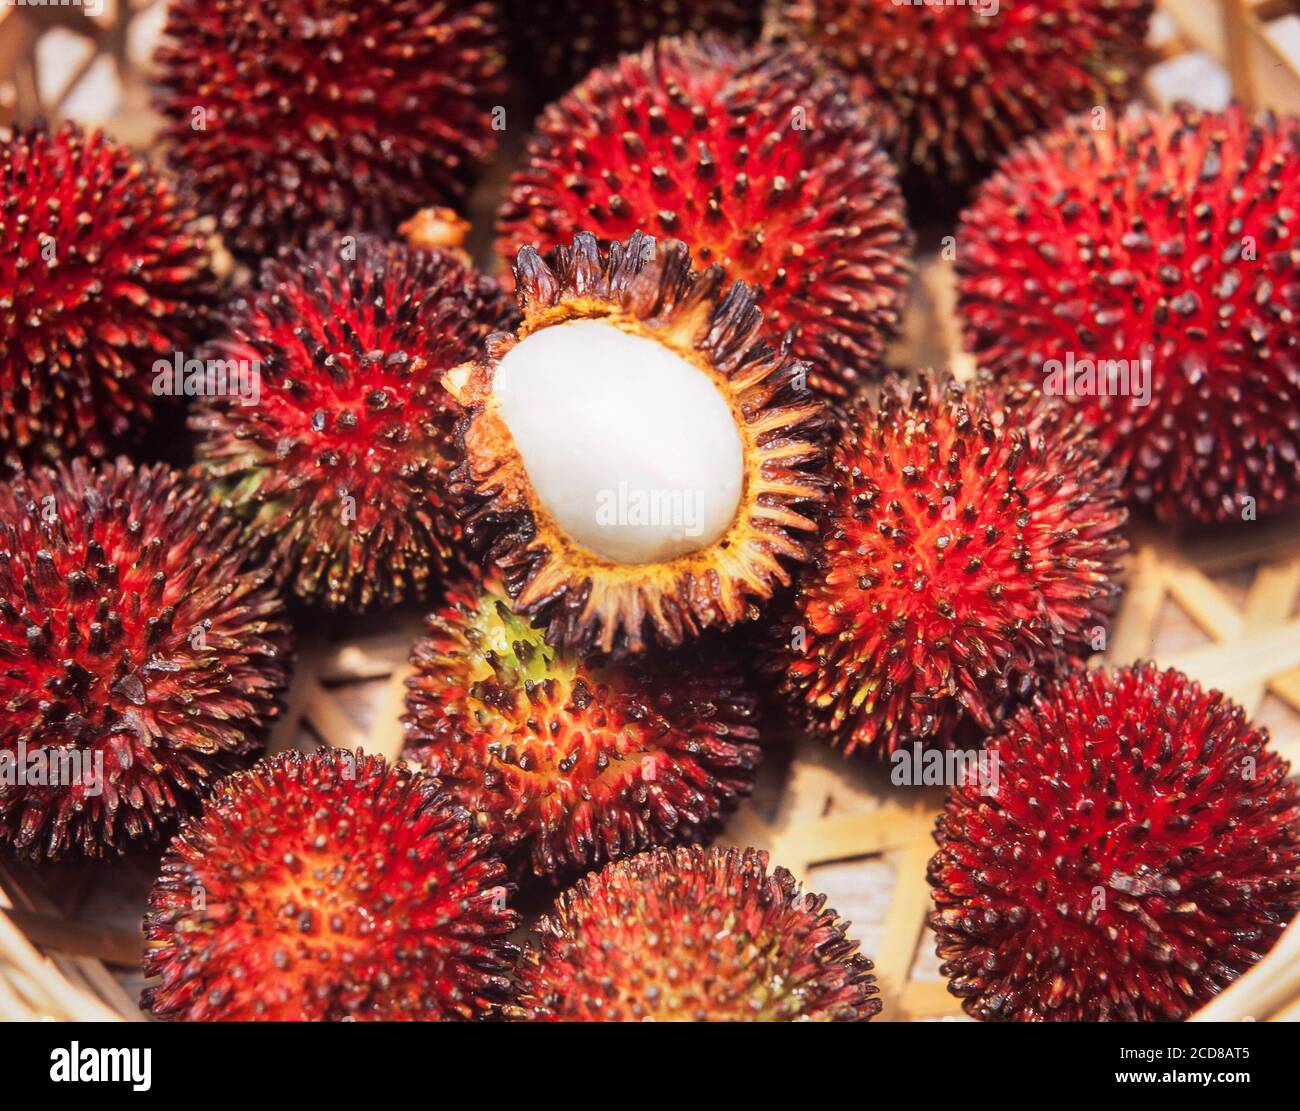 Forest or wild Rambutan fruit, Nephelium lappaceum, Malaysia Stock Photo